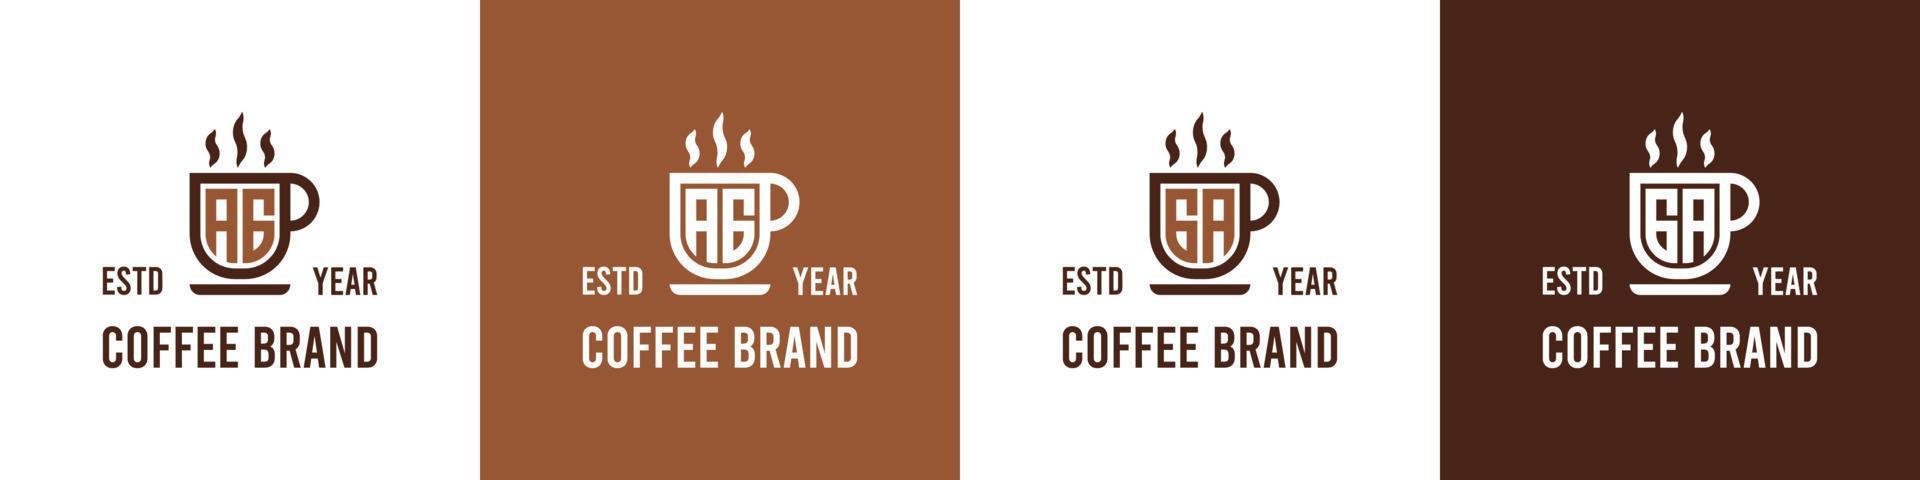 logotipo de café con letras ag y ga, adecuado para cualquier negocio relacionado con el café, el té u otros con las iniciales ag o ga. vector